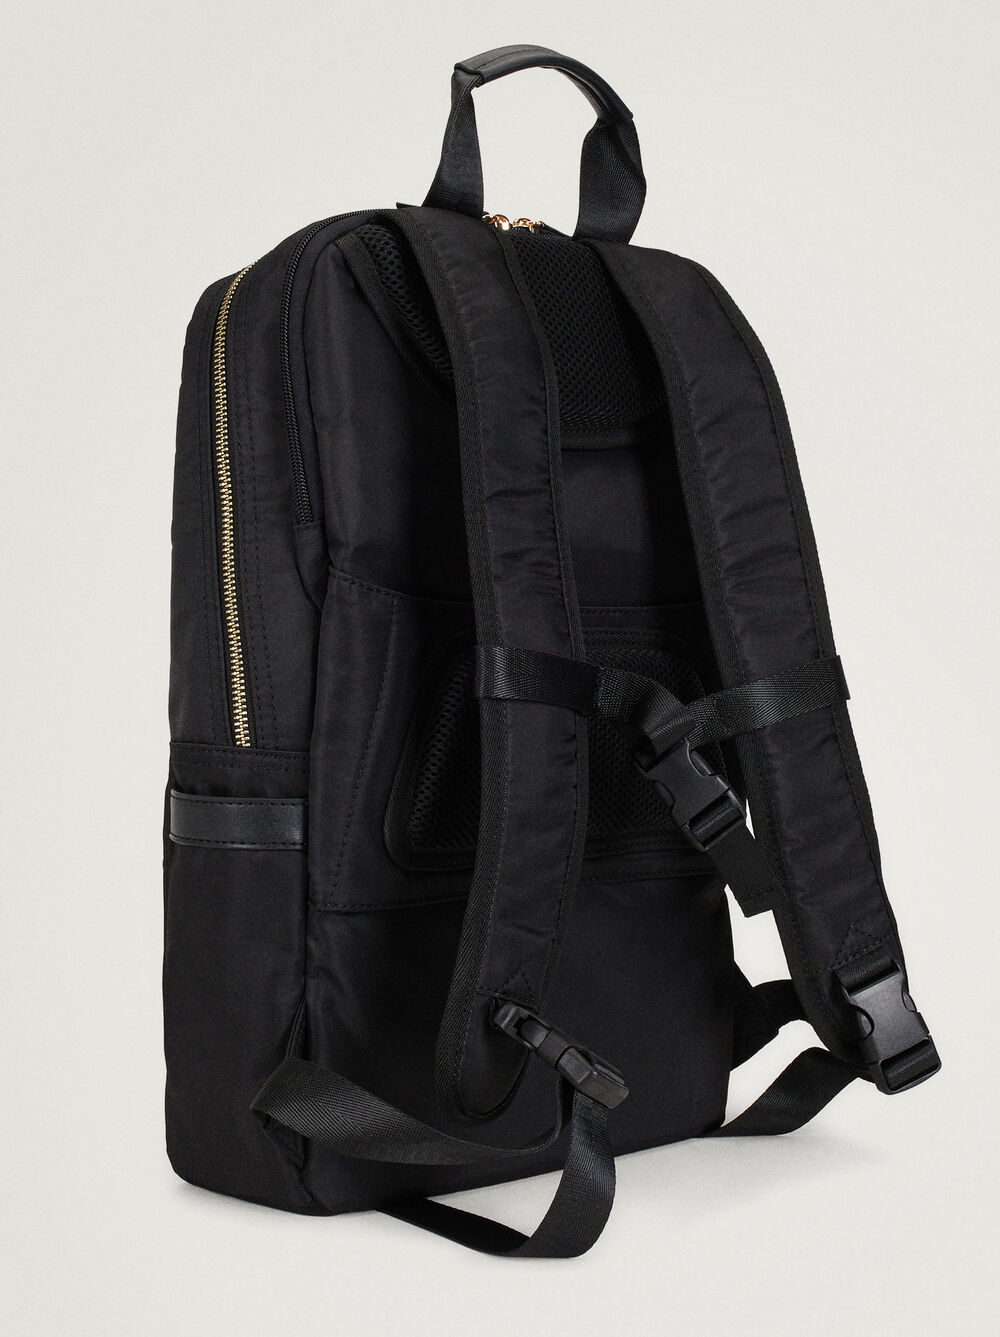 Nylon Backpack For 15” Laptop